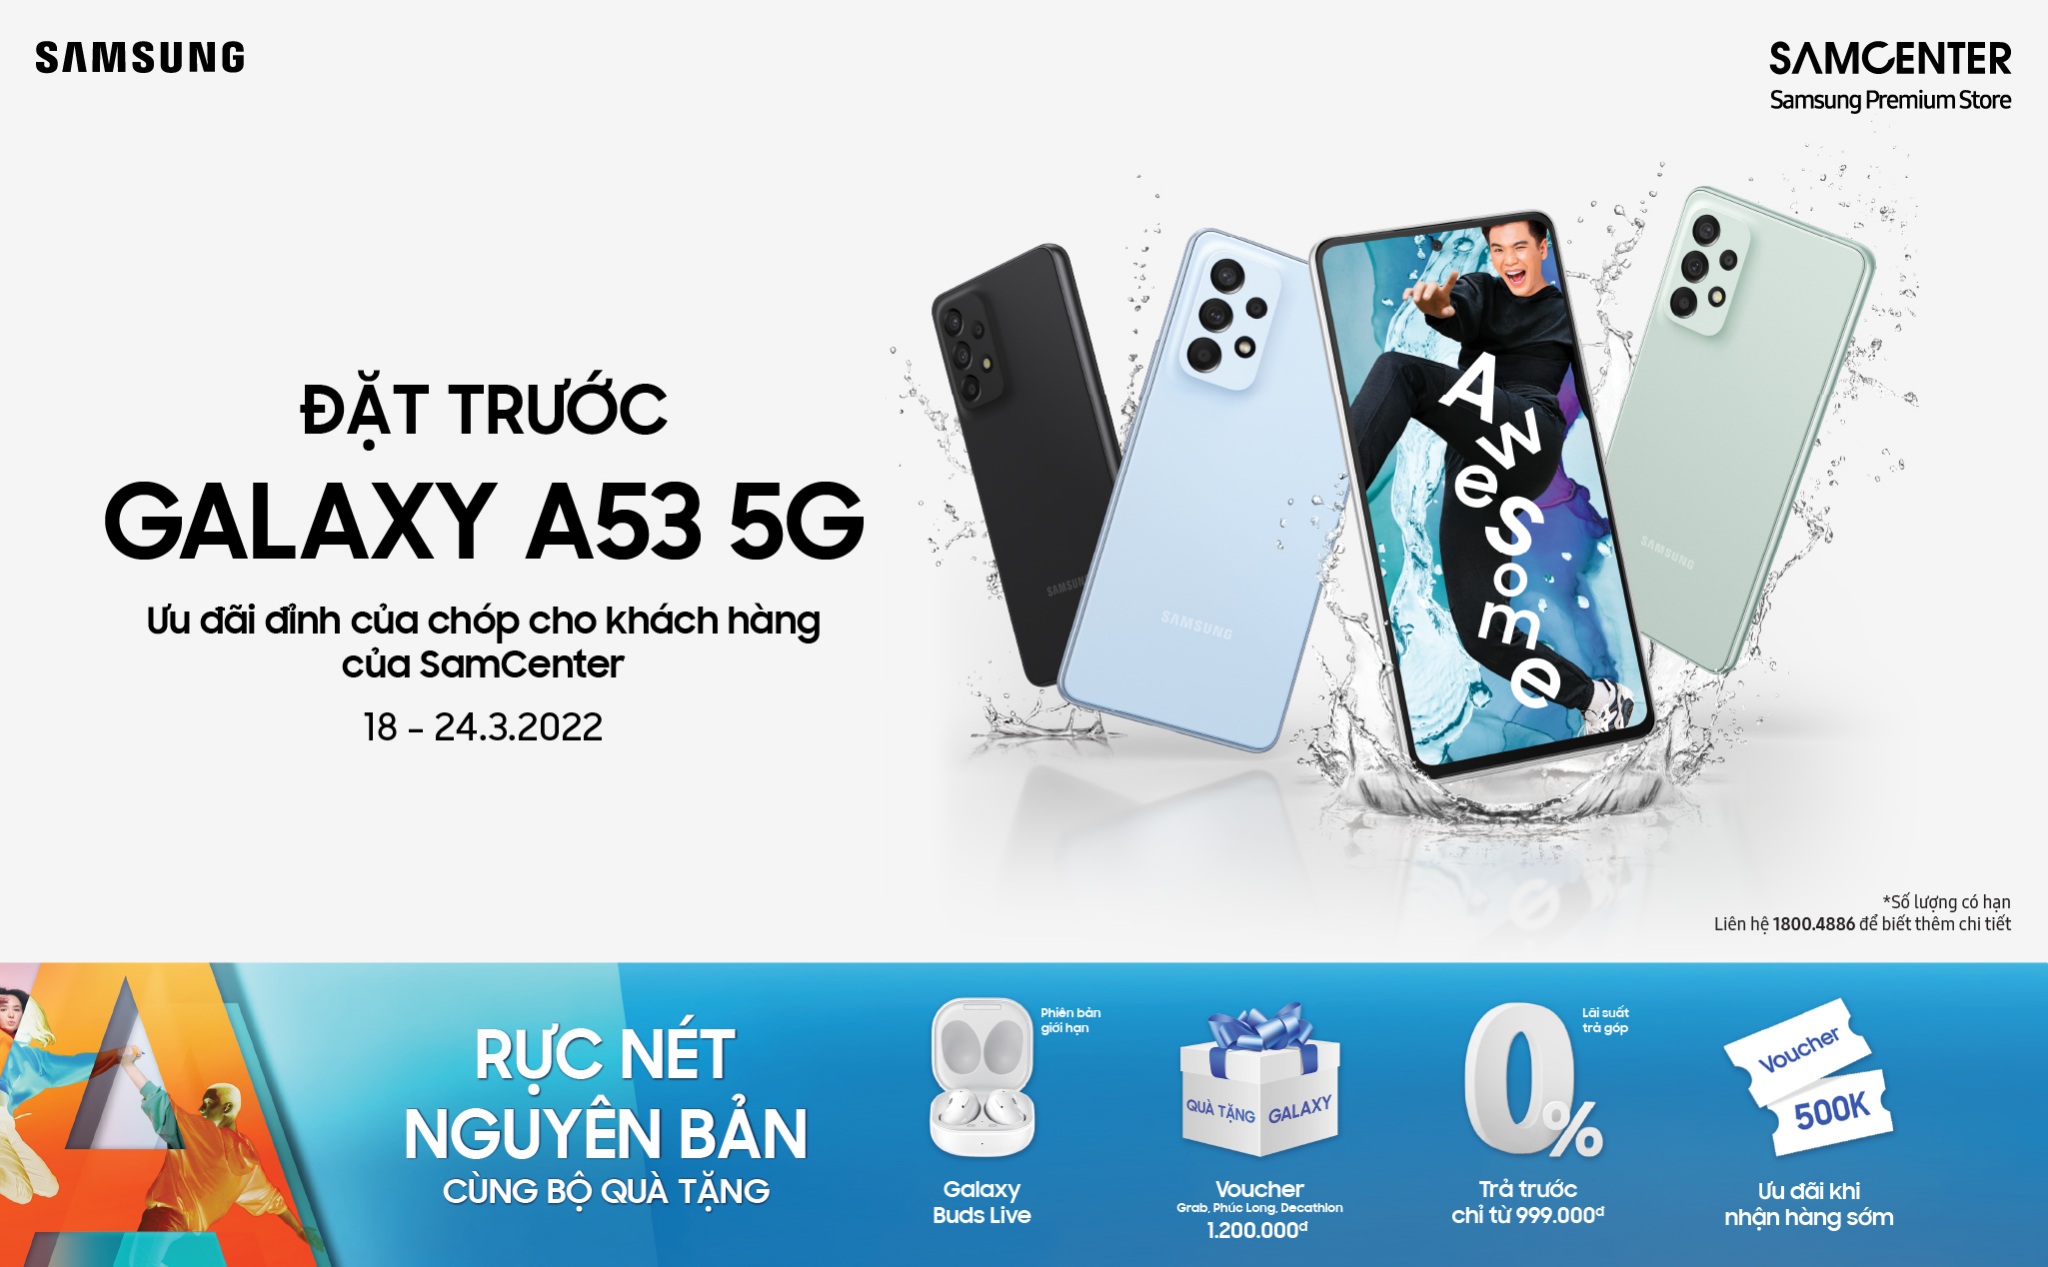 [QC] Đặt hàng và trải nghiệm Galaxy A53 5G đầu tiên tại SamCenter với nhiều khuyến mại hấp dẫn